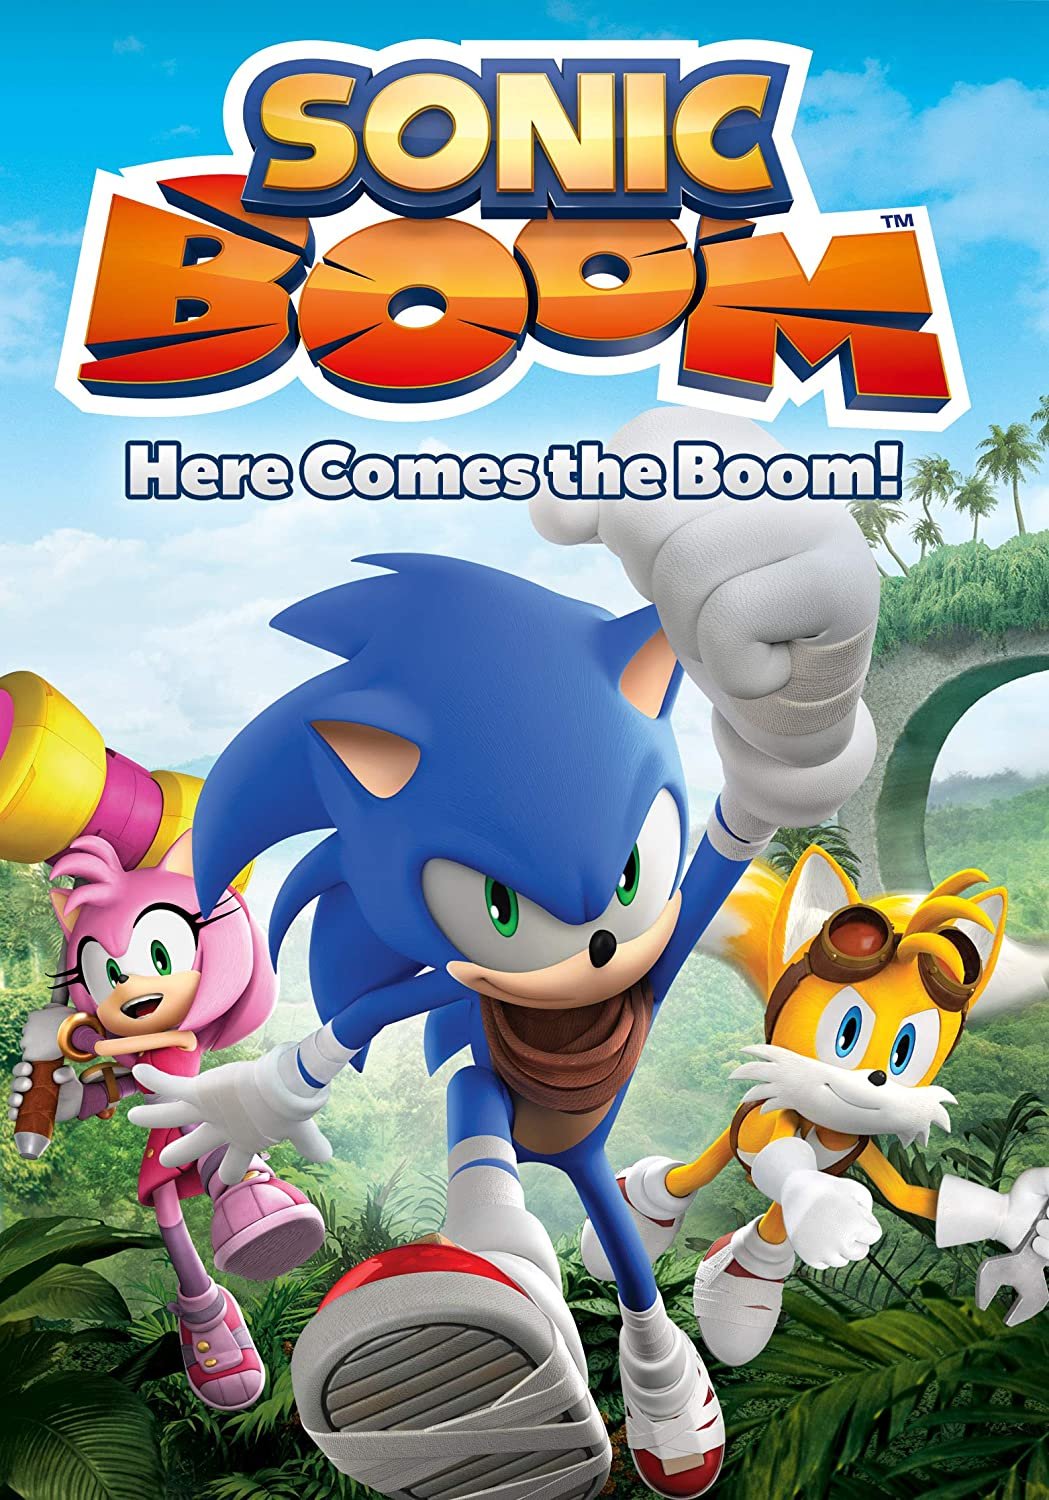 სონიკ ბუმი სეზონი 1 / Sonic Boom Season 1 ქართულად